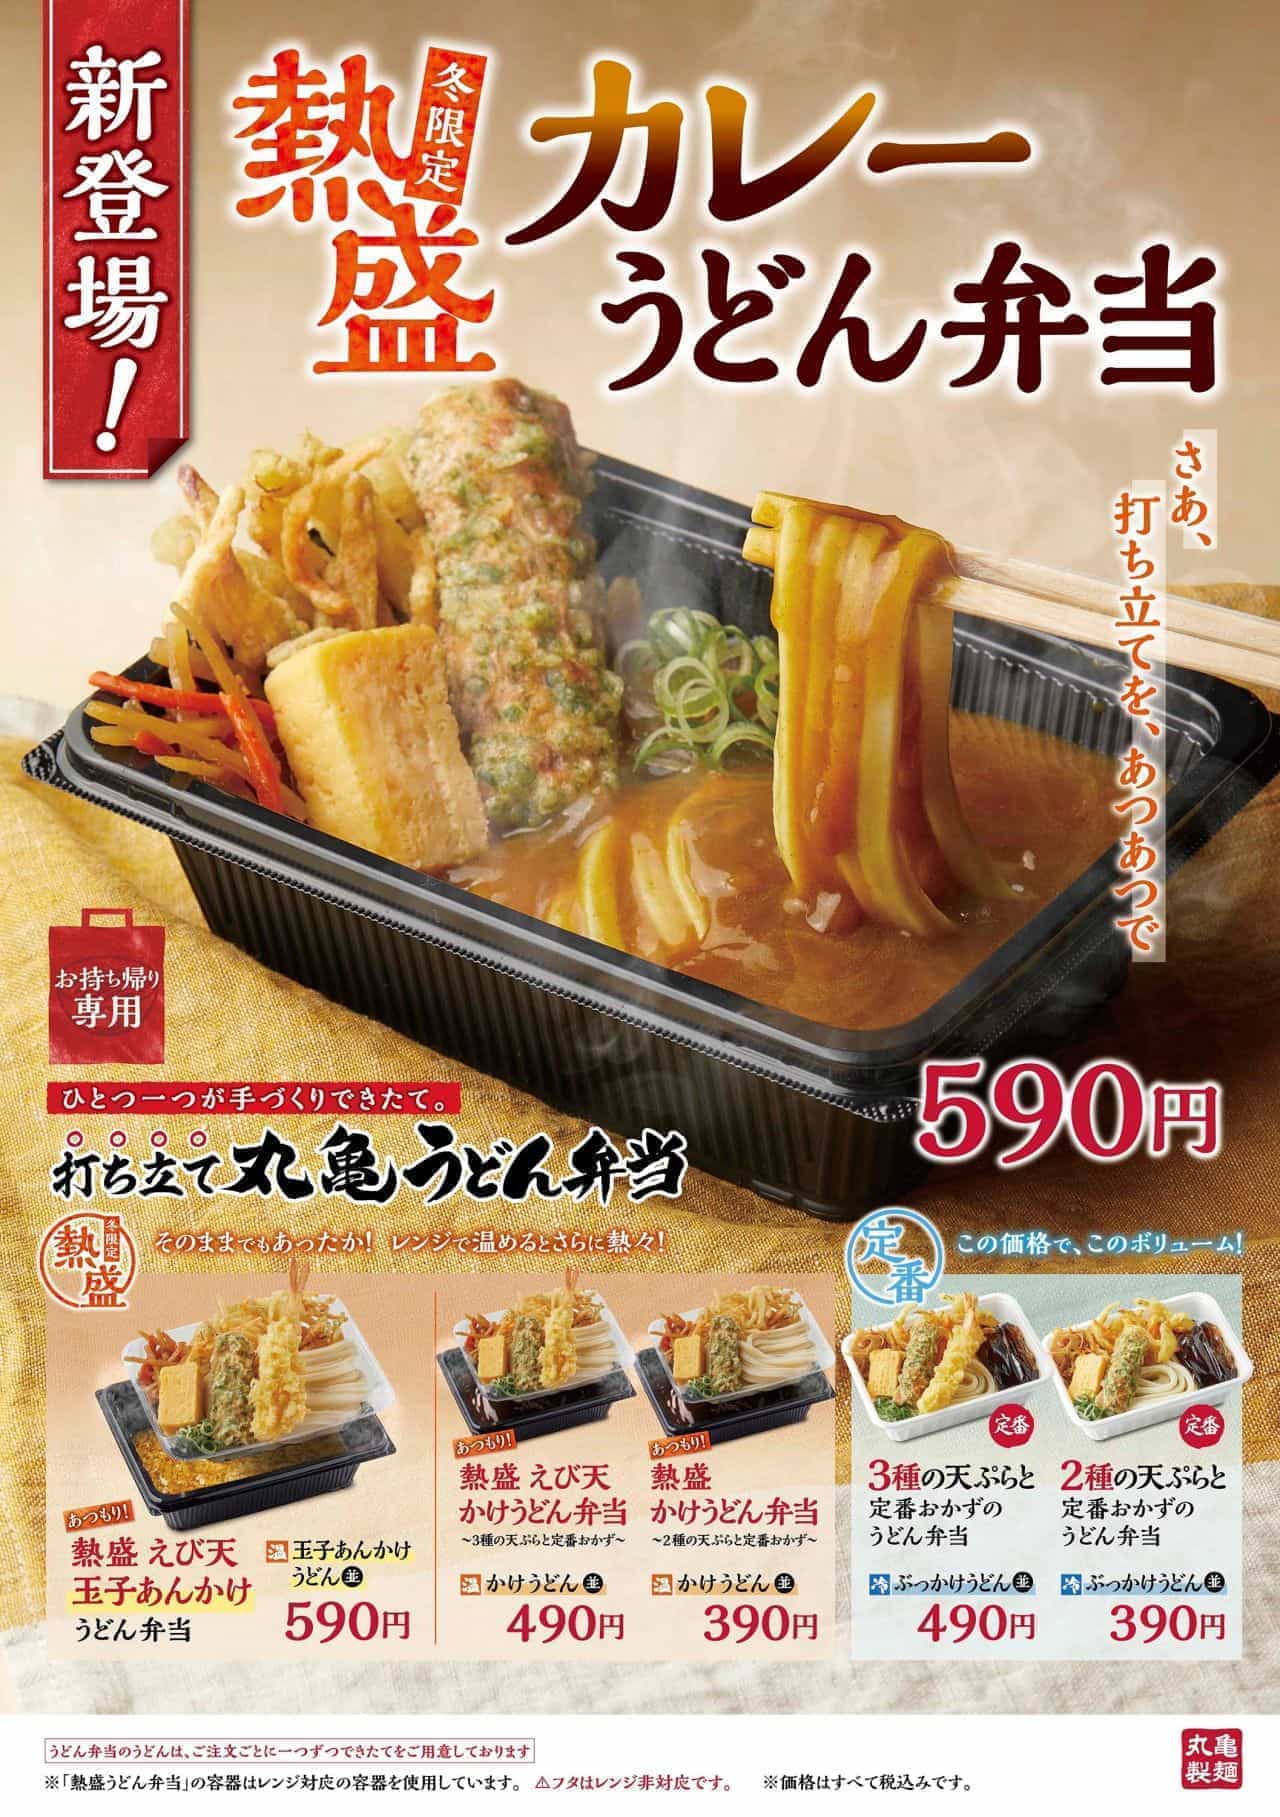 丸亀製麺「熱盛 カレーうどん弁当」